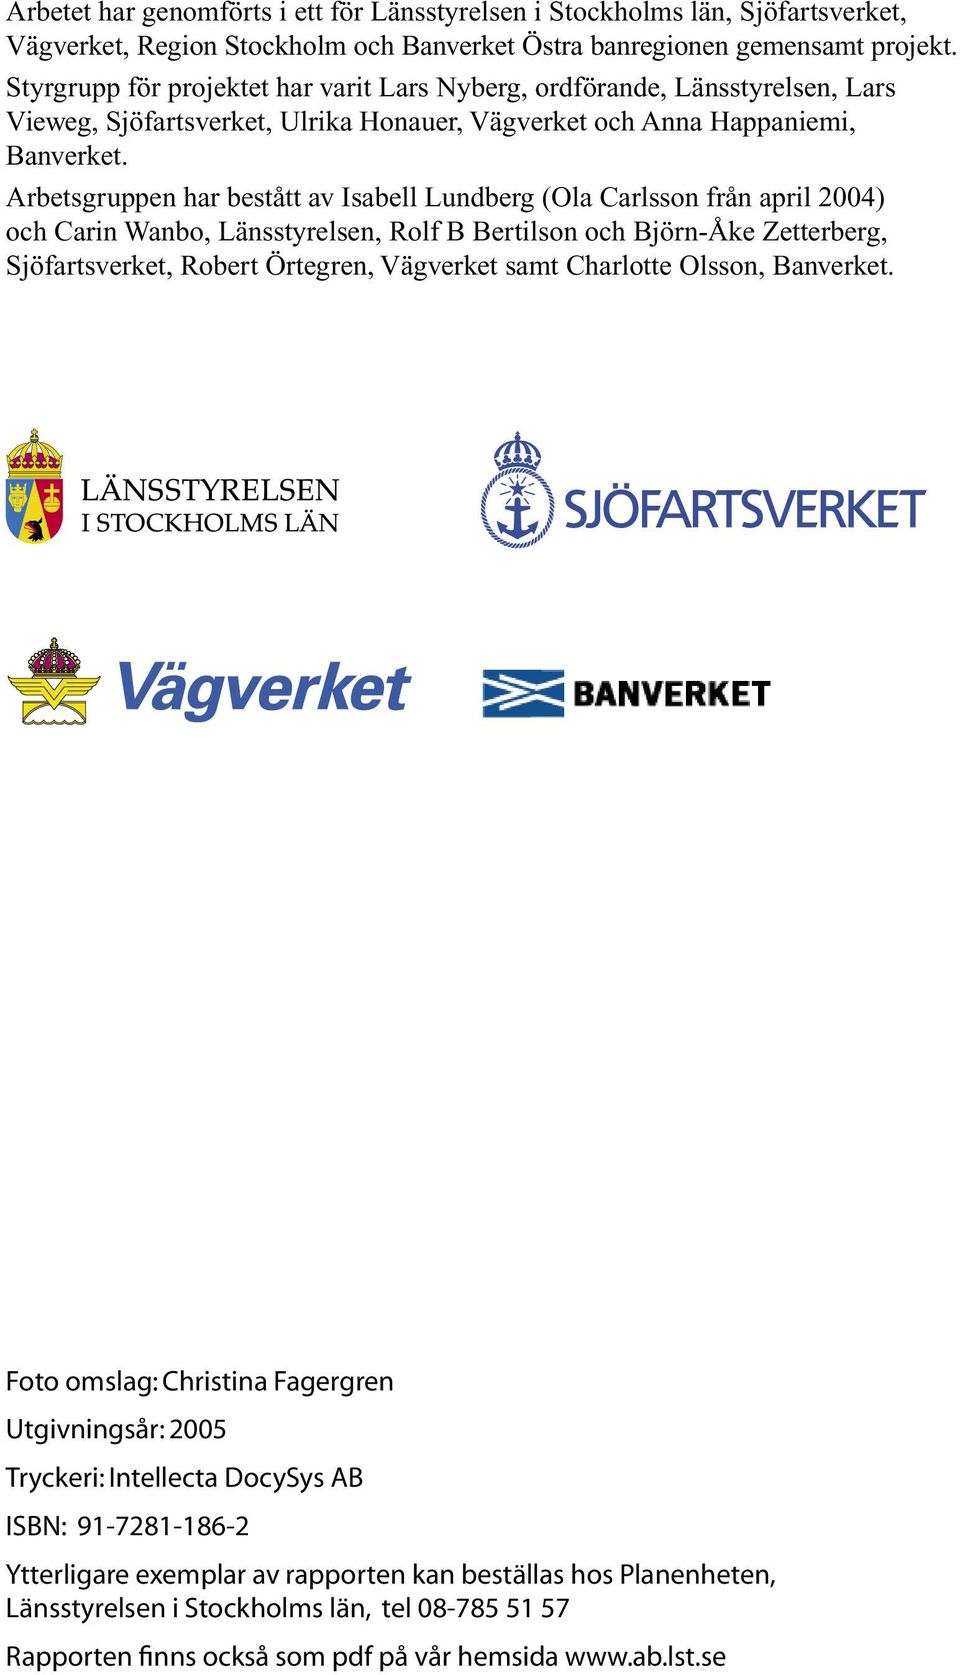 Arbetsgruppen har bestått av Isabell Lundberg (Ola Carlsson från april 2004) och Carin Wanbo, Länsstyrelsen, Rolf B Bertilson och Björn-Åke Zetterberg, Sjöfartsverket, Robert Örtegren, Vägverket samt